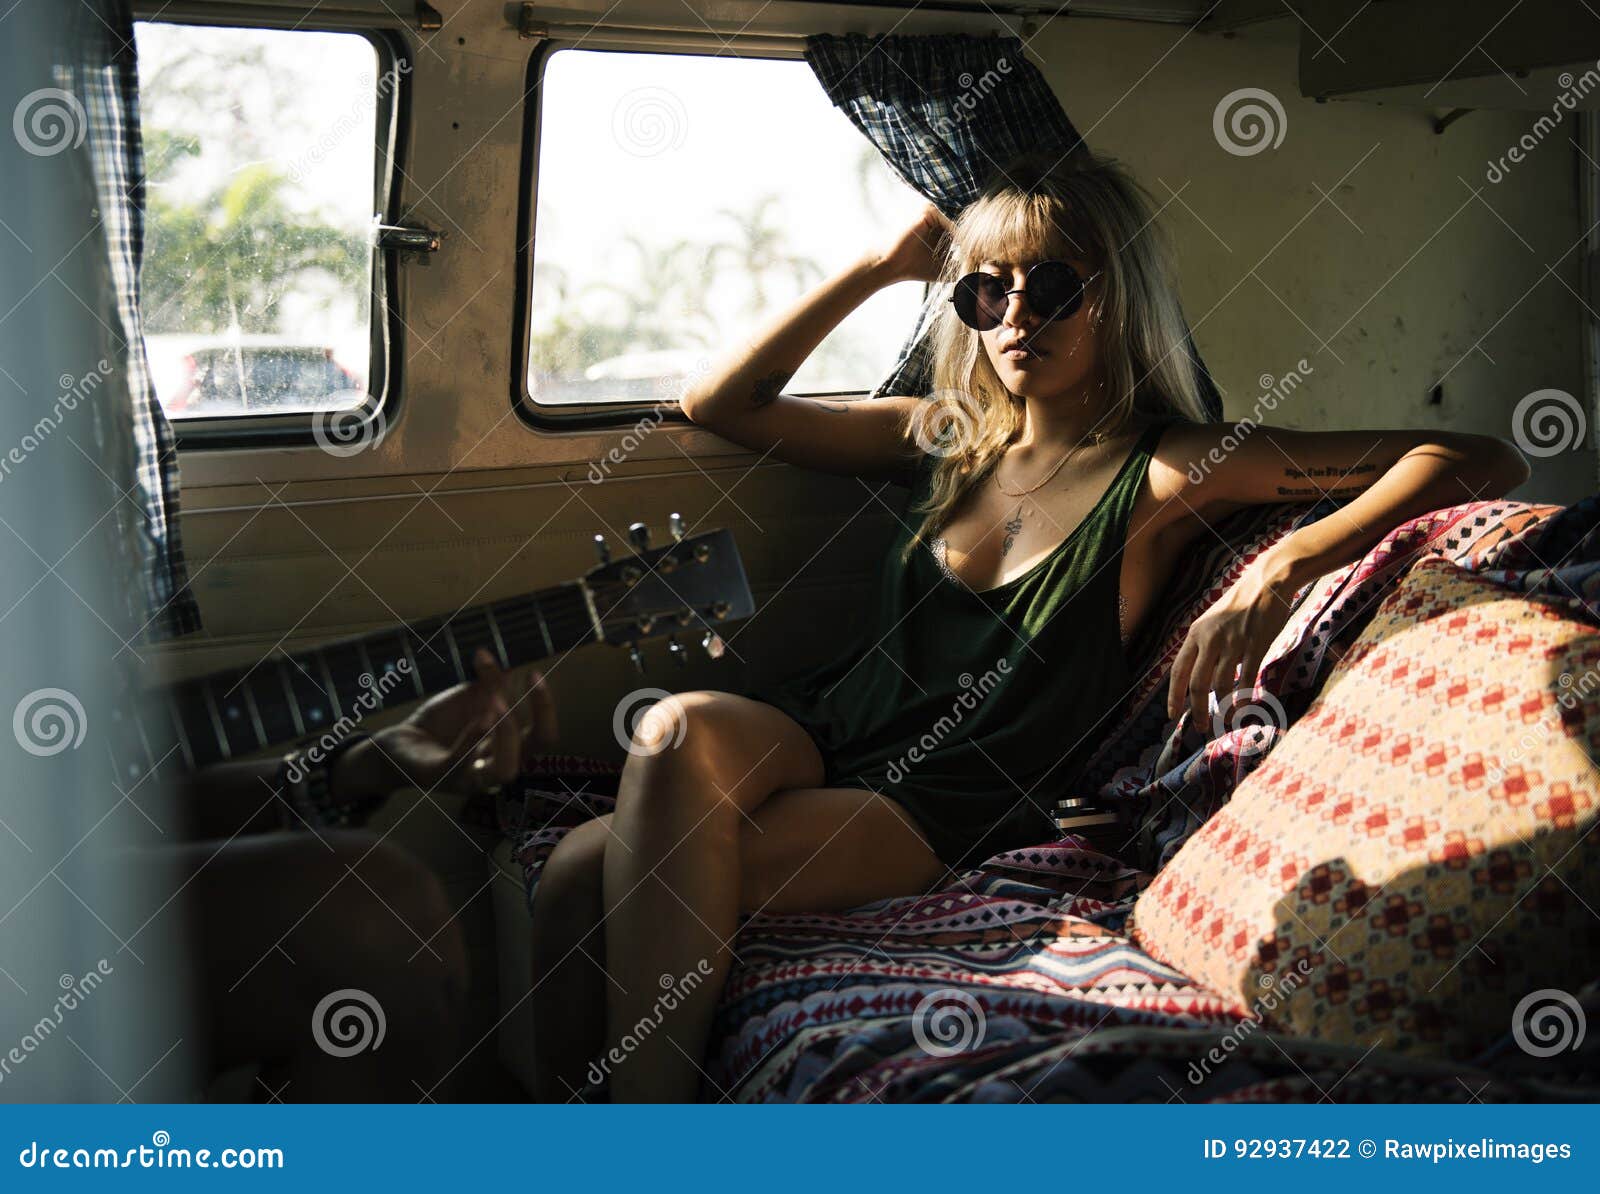 woman sitting in a van roadtrip